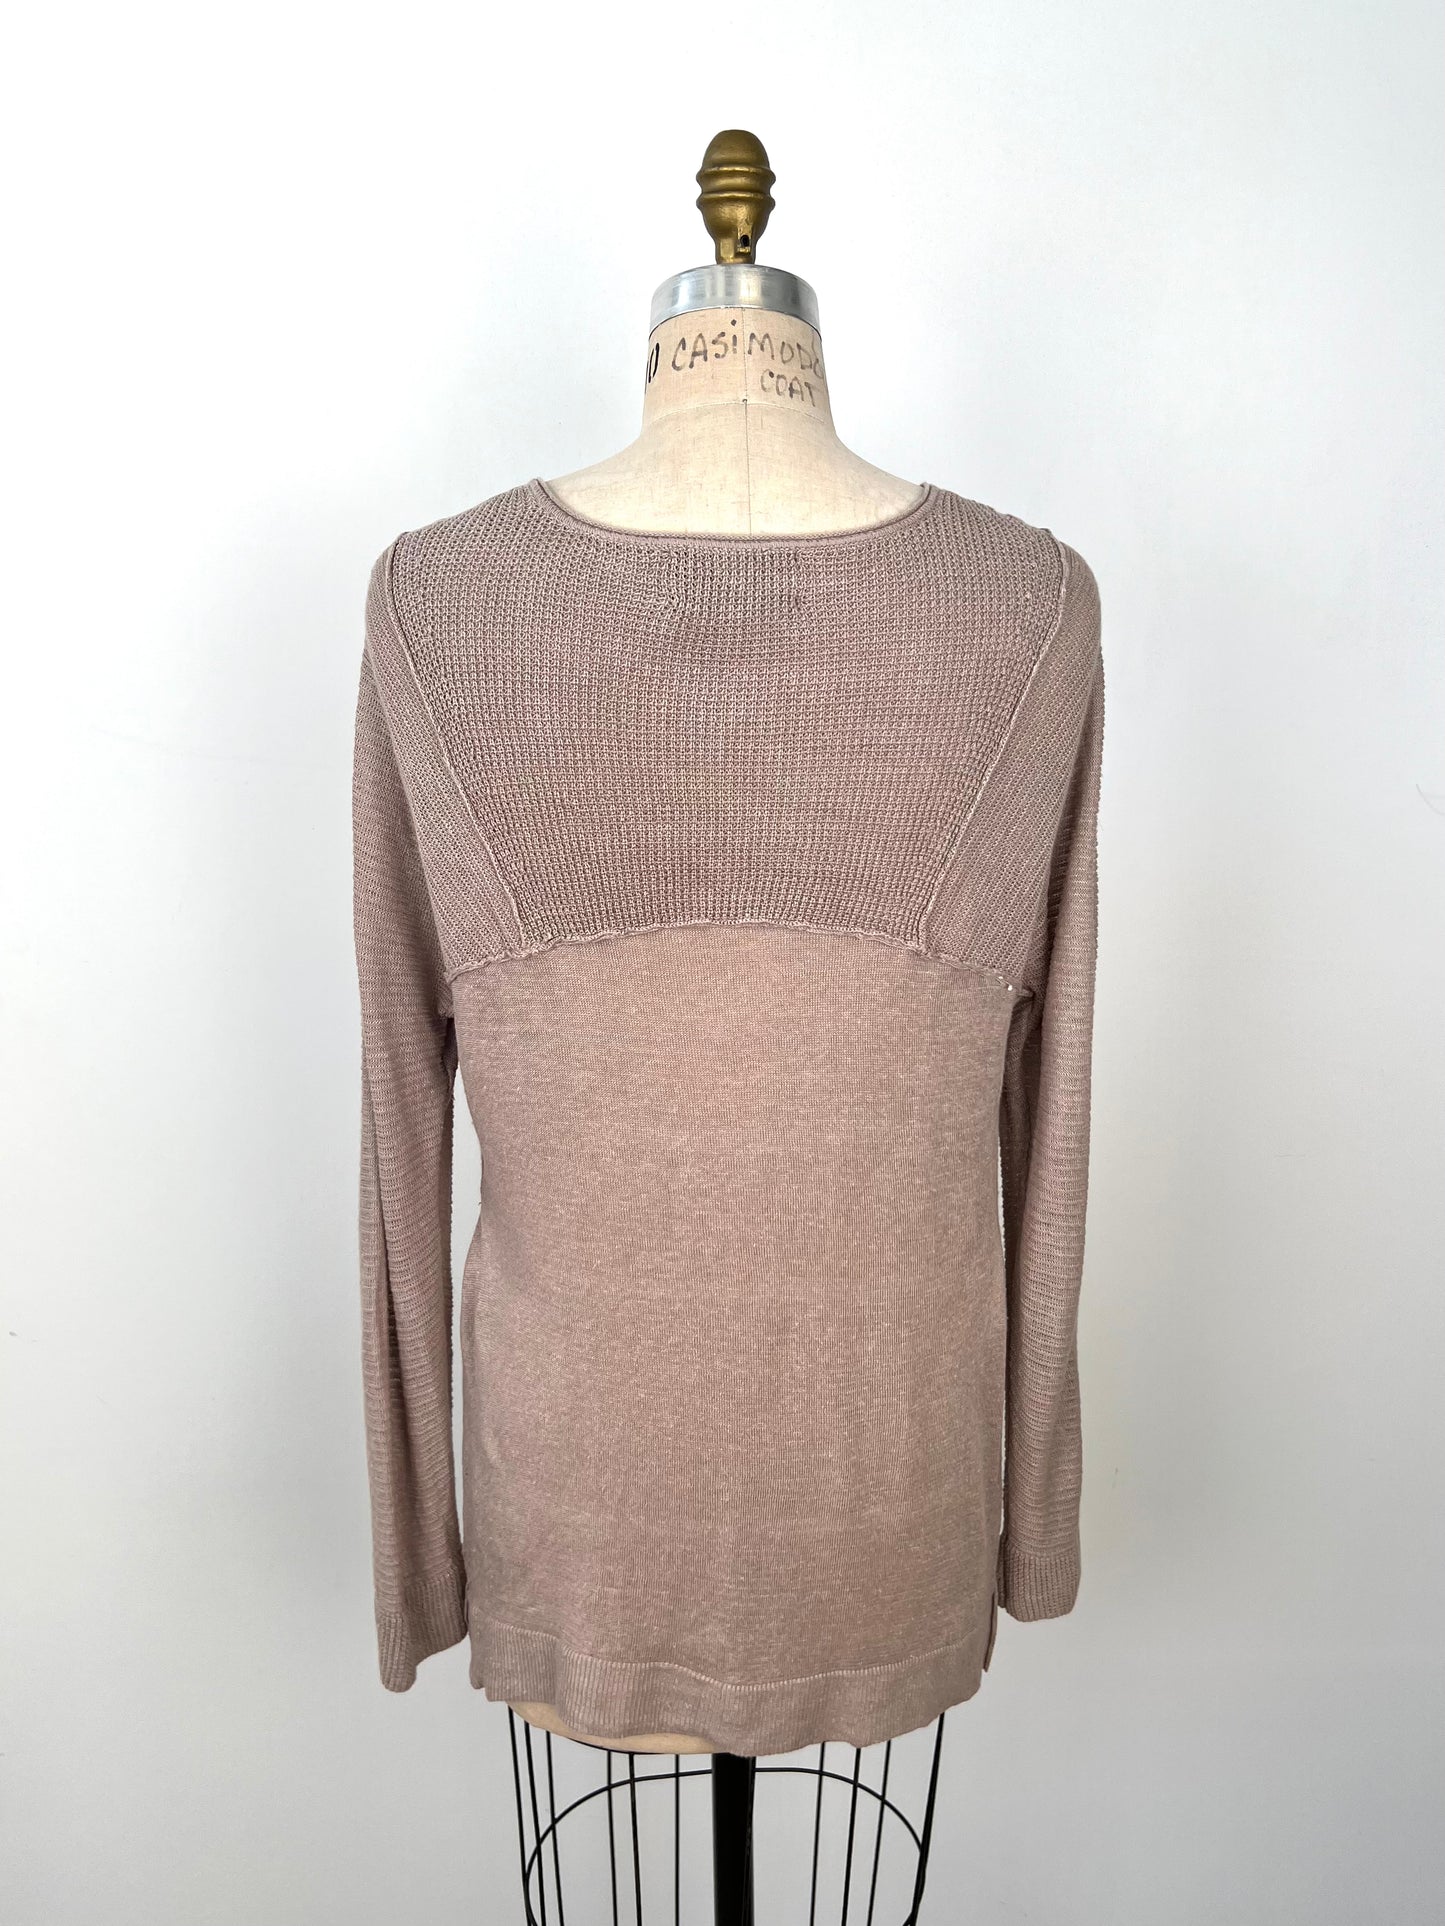 Chandail tricot pur lin à empiècements texturés (M)